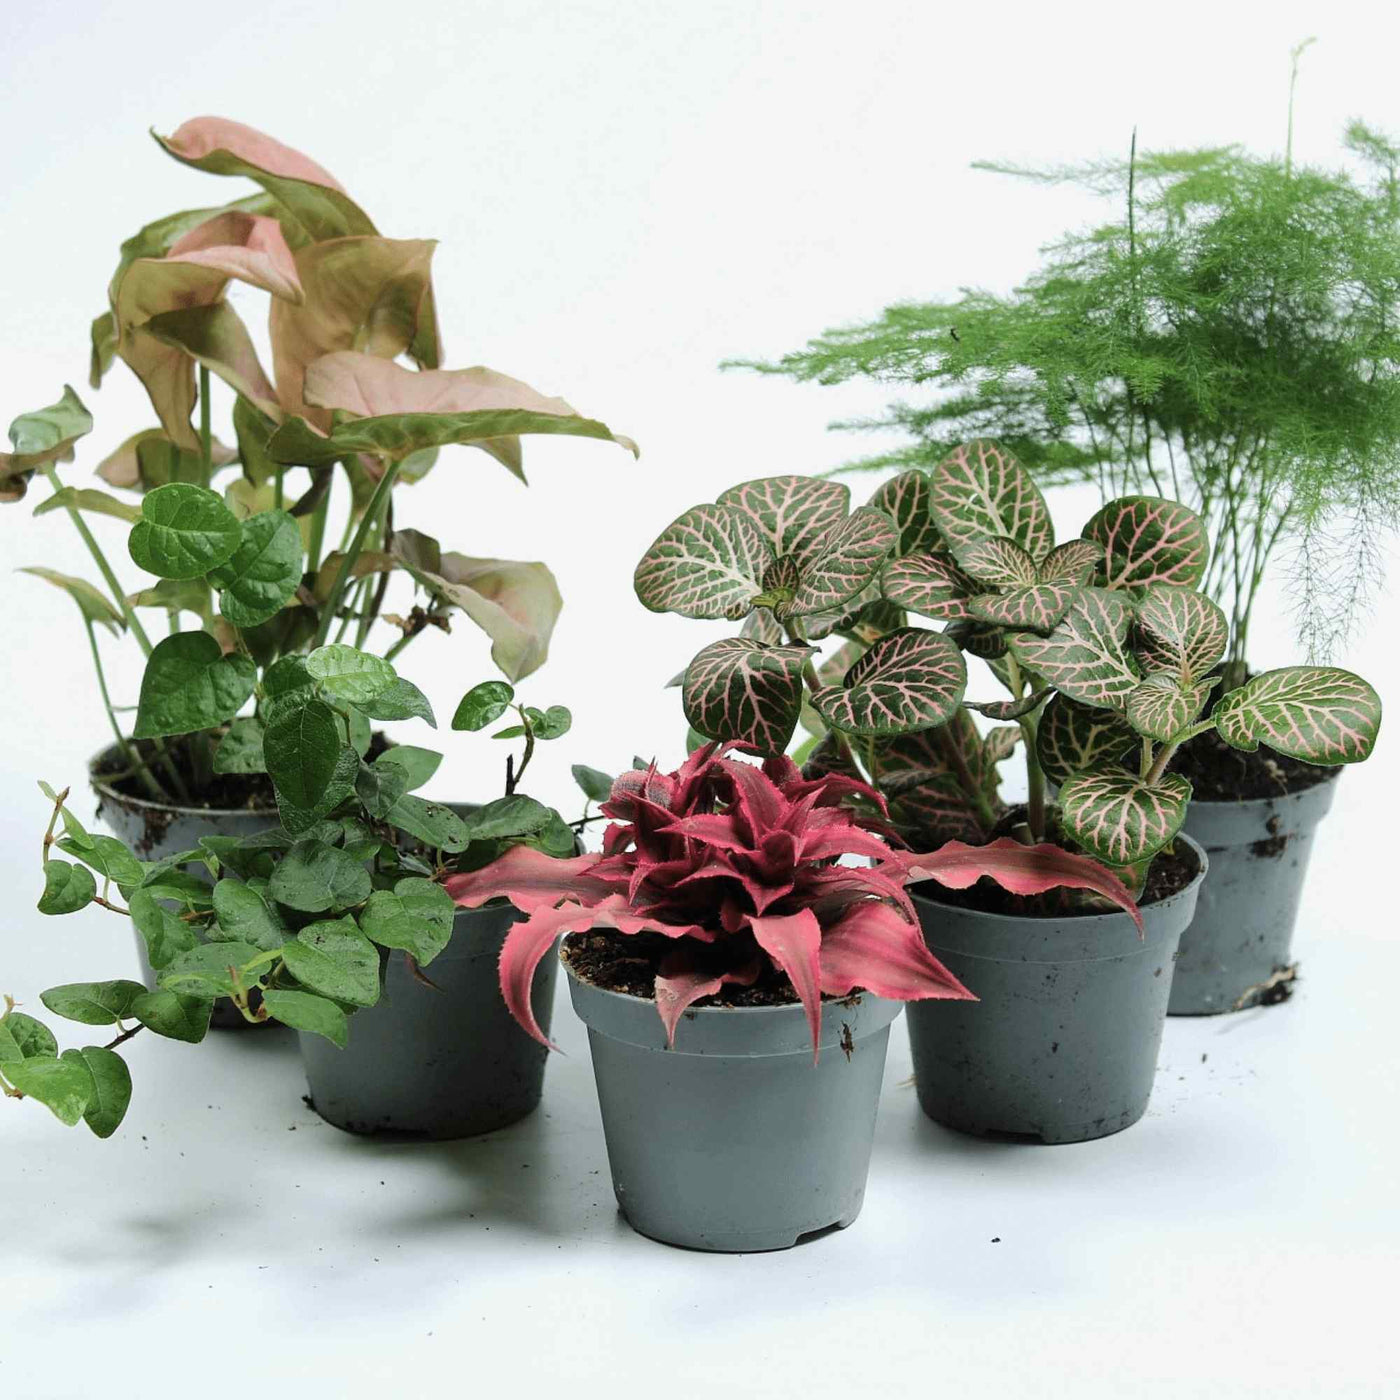 Colourful terrariums plants